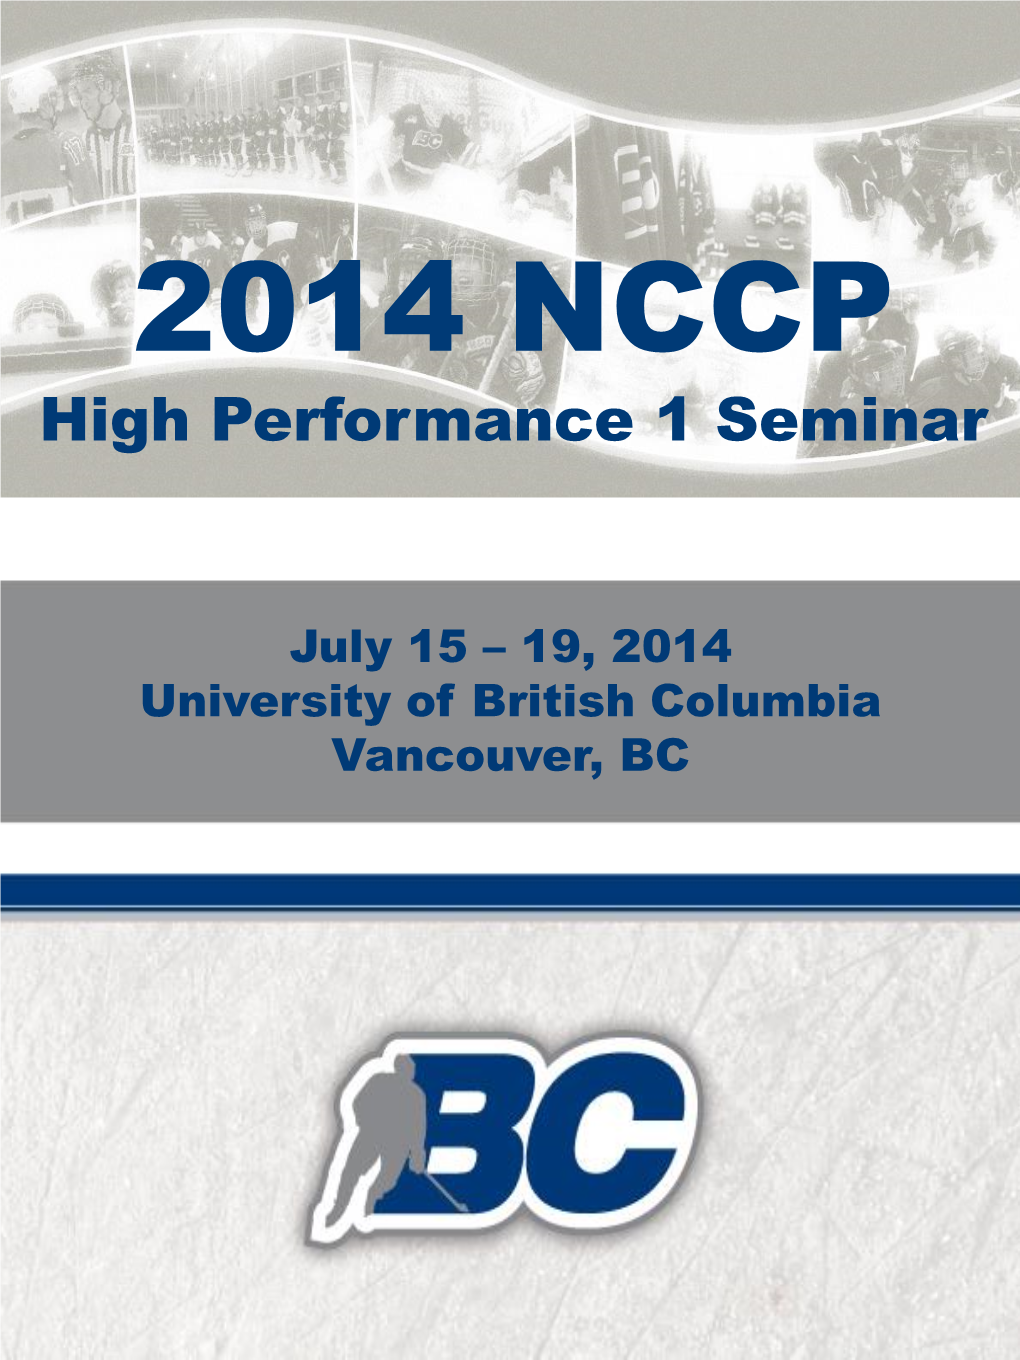 2014 NCCP High Performance 1 Seminar